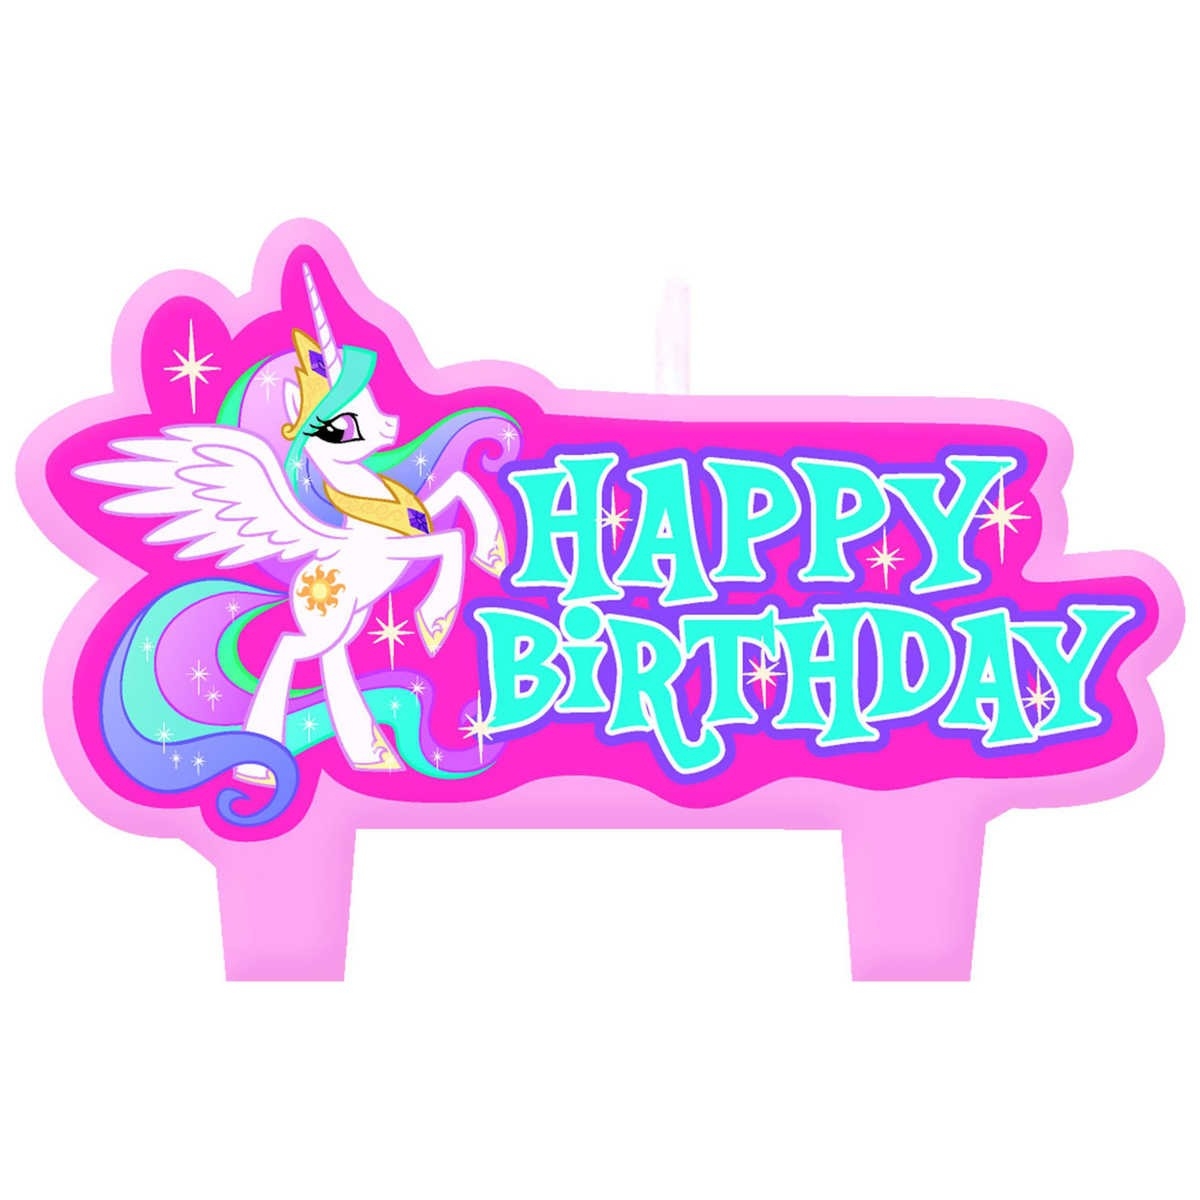 Литл пони день рождение. С днем рождения пони. Надпись с днем рождения в стиле пони. MLP С днем рождения. Майлител пони день рождения.